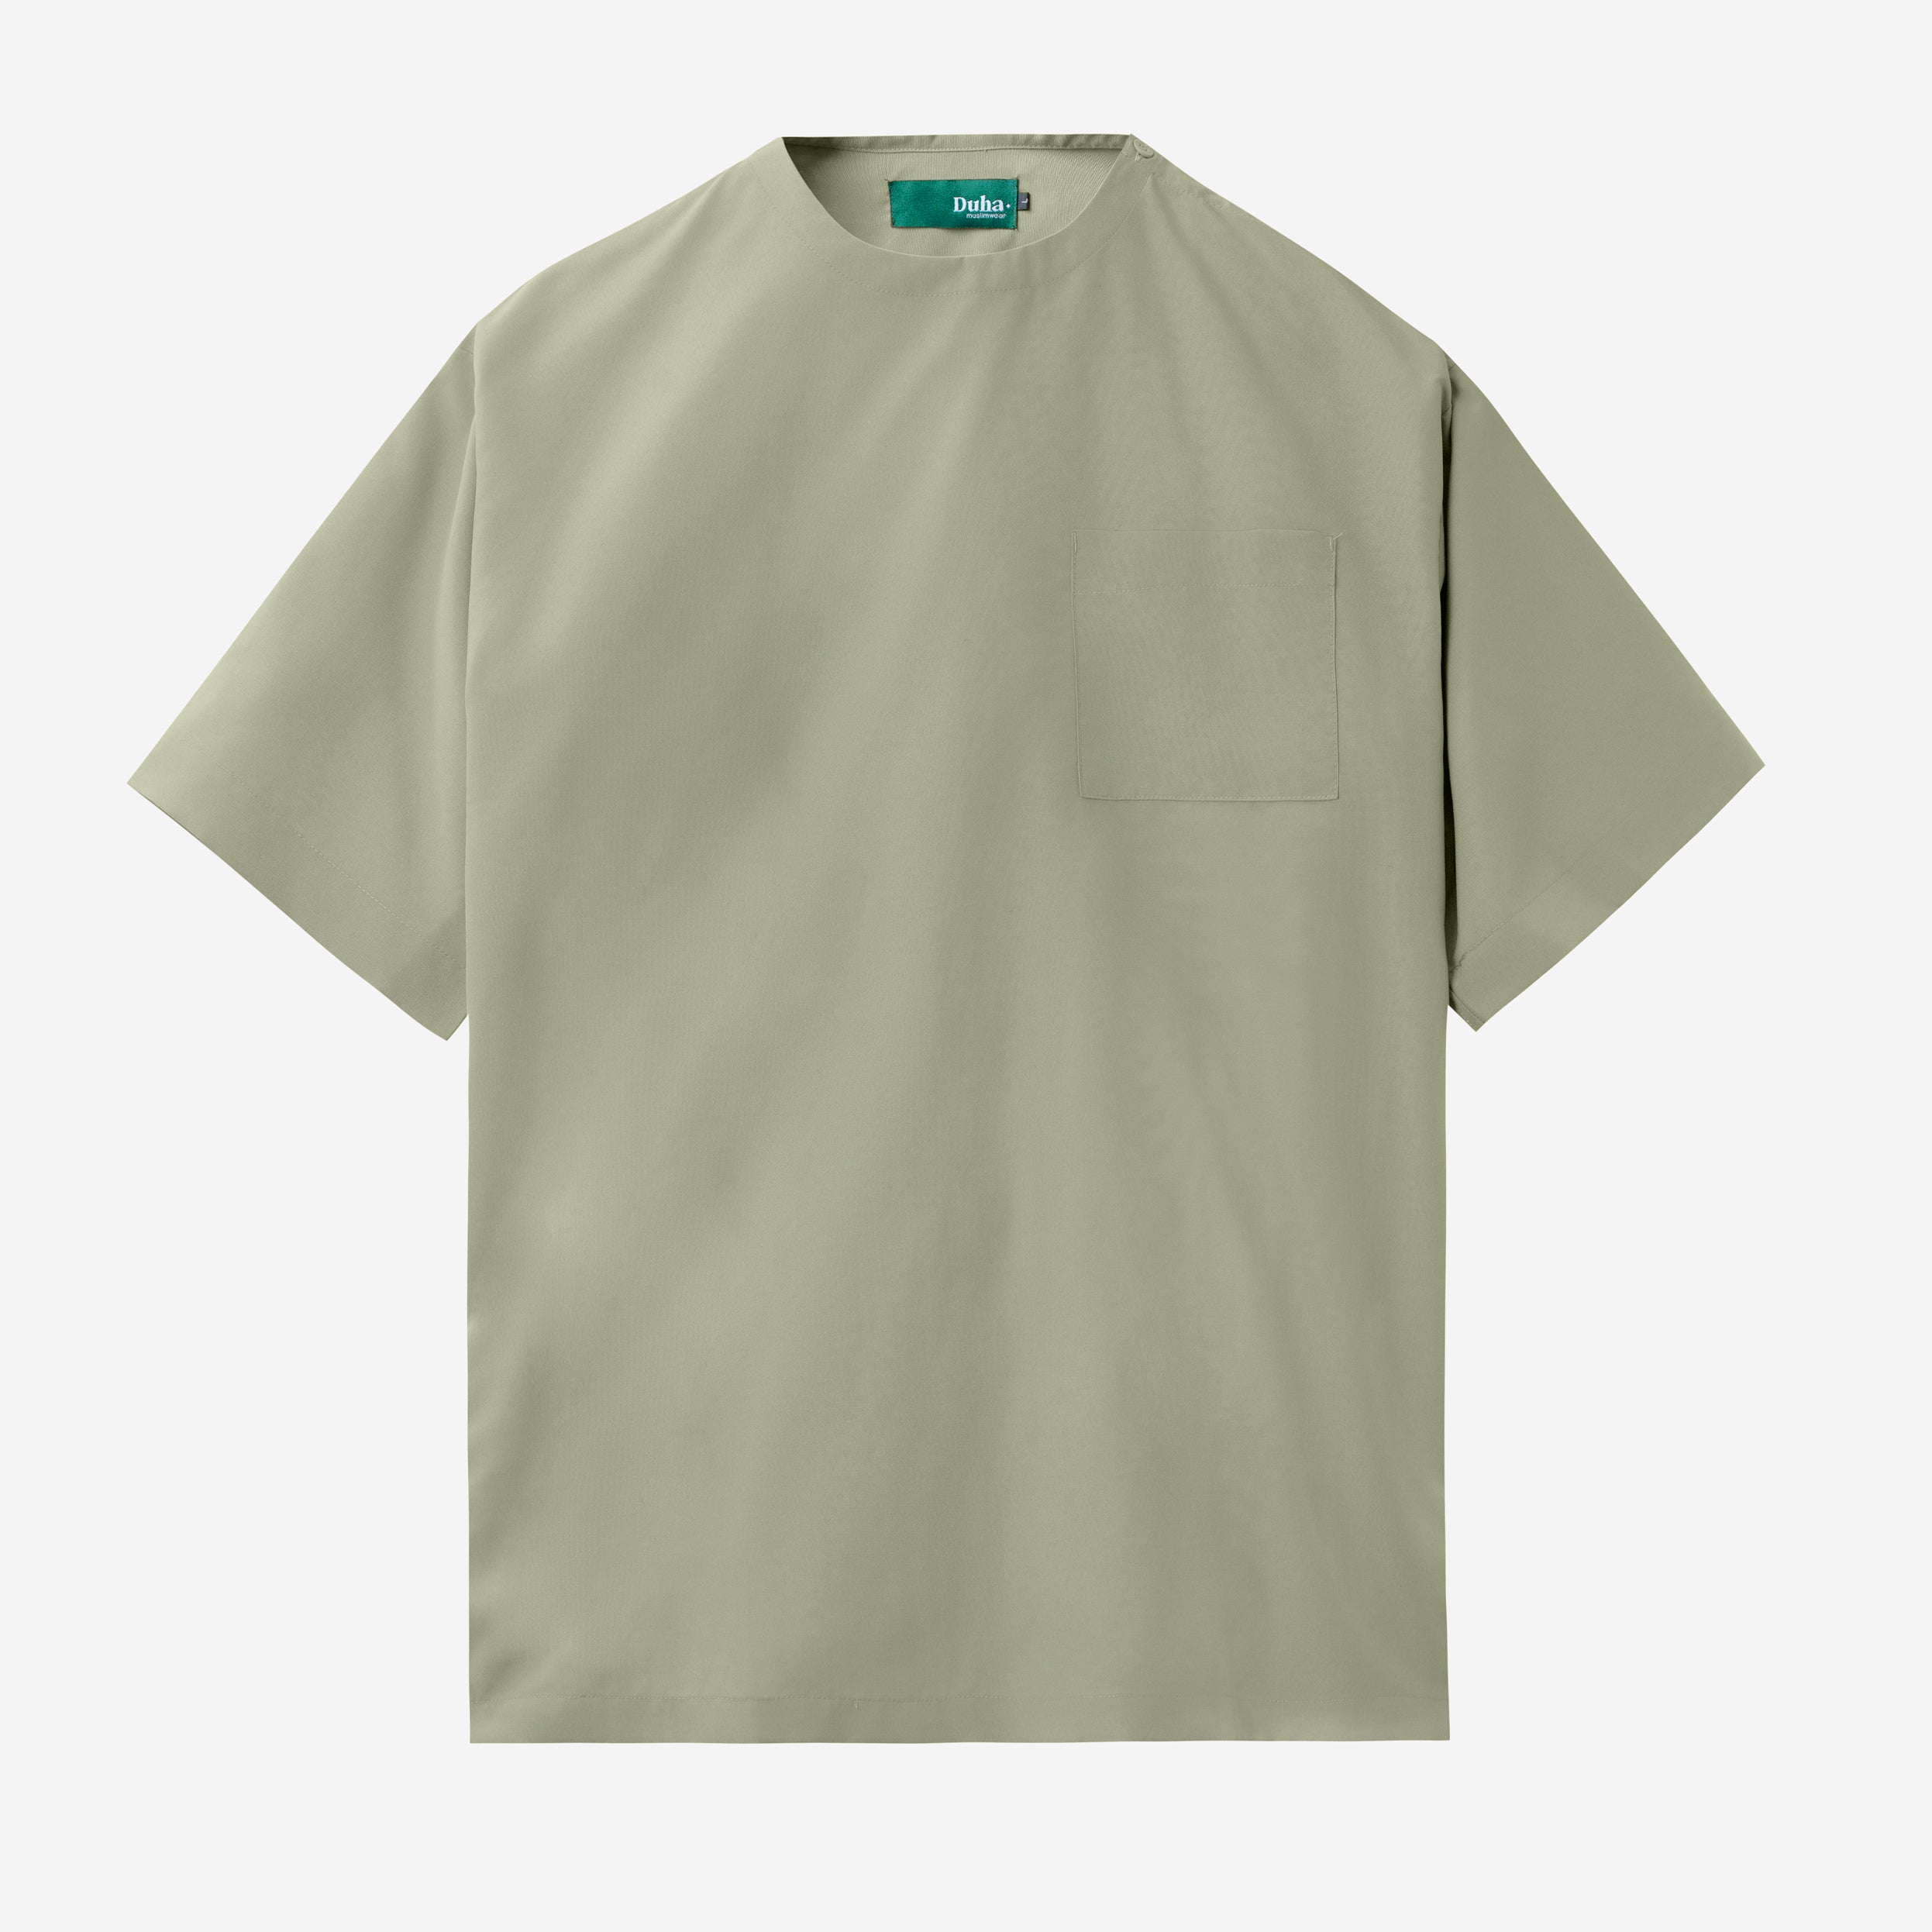 Rahab T-shirt - Soft Olive